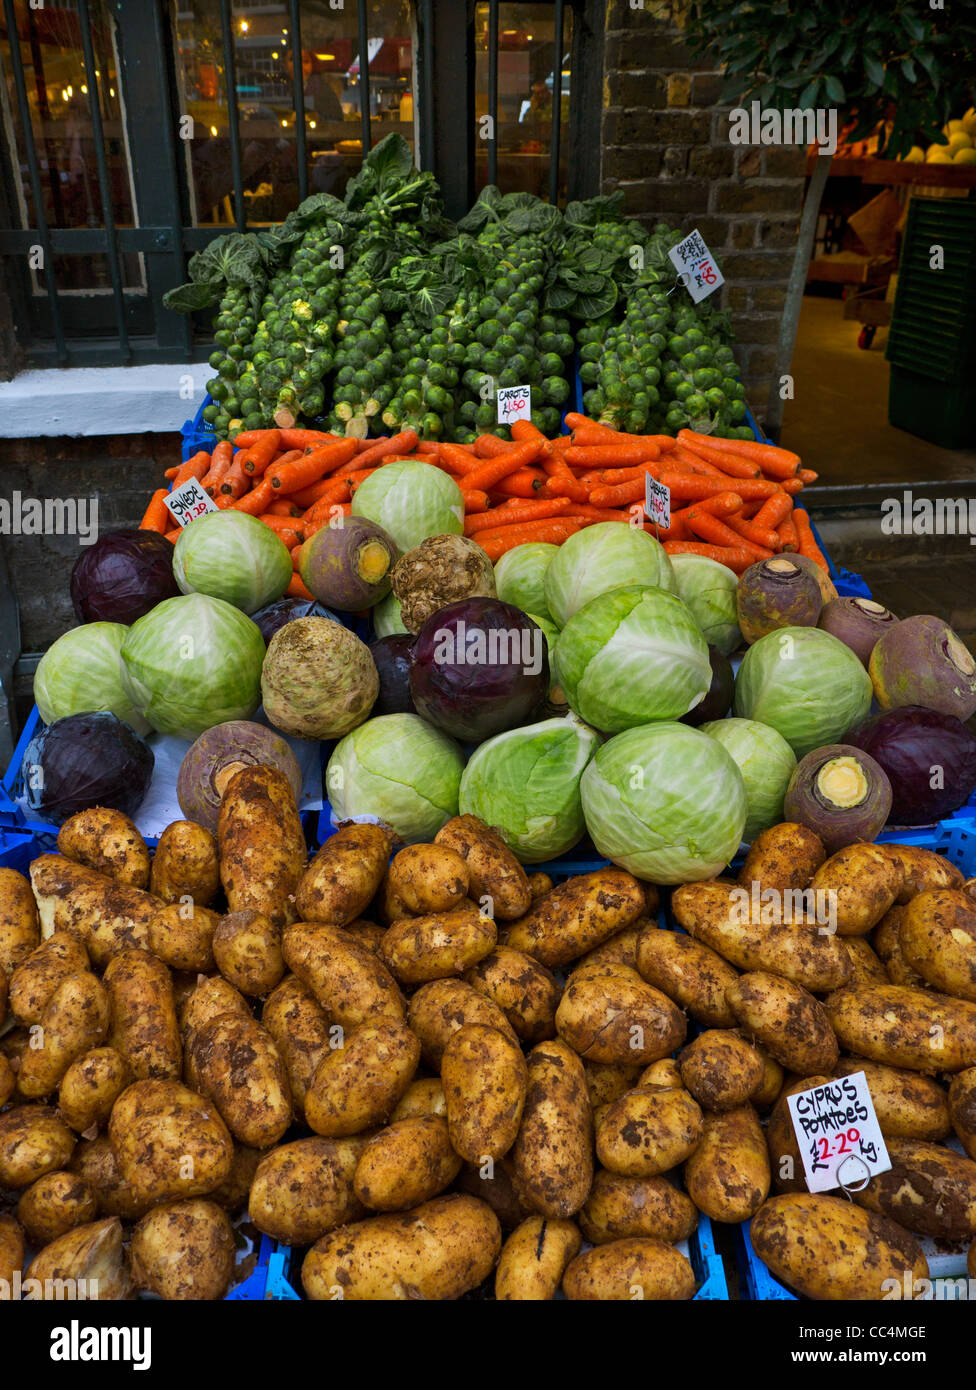 BOROUGH MARKET BARROW selezione di verdure fresche in vendita al mercato di Borough Southwark London REGNO UNITO Foto Stock